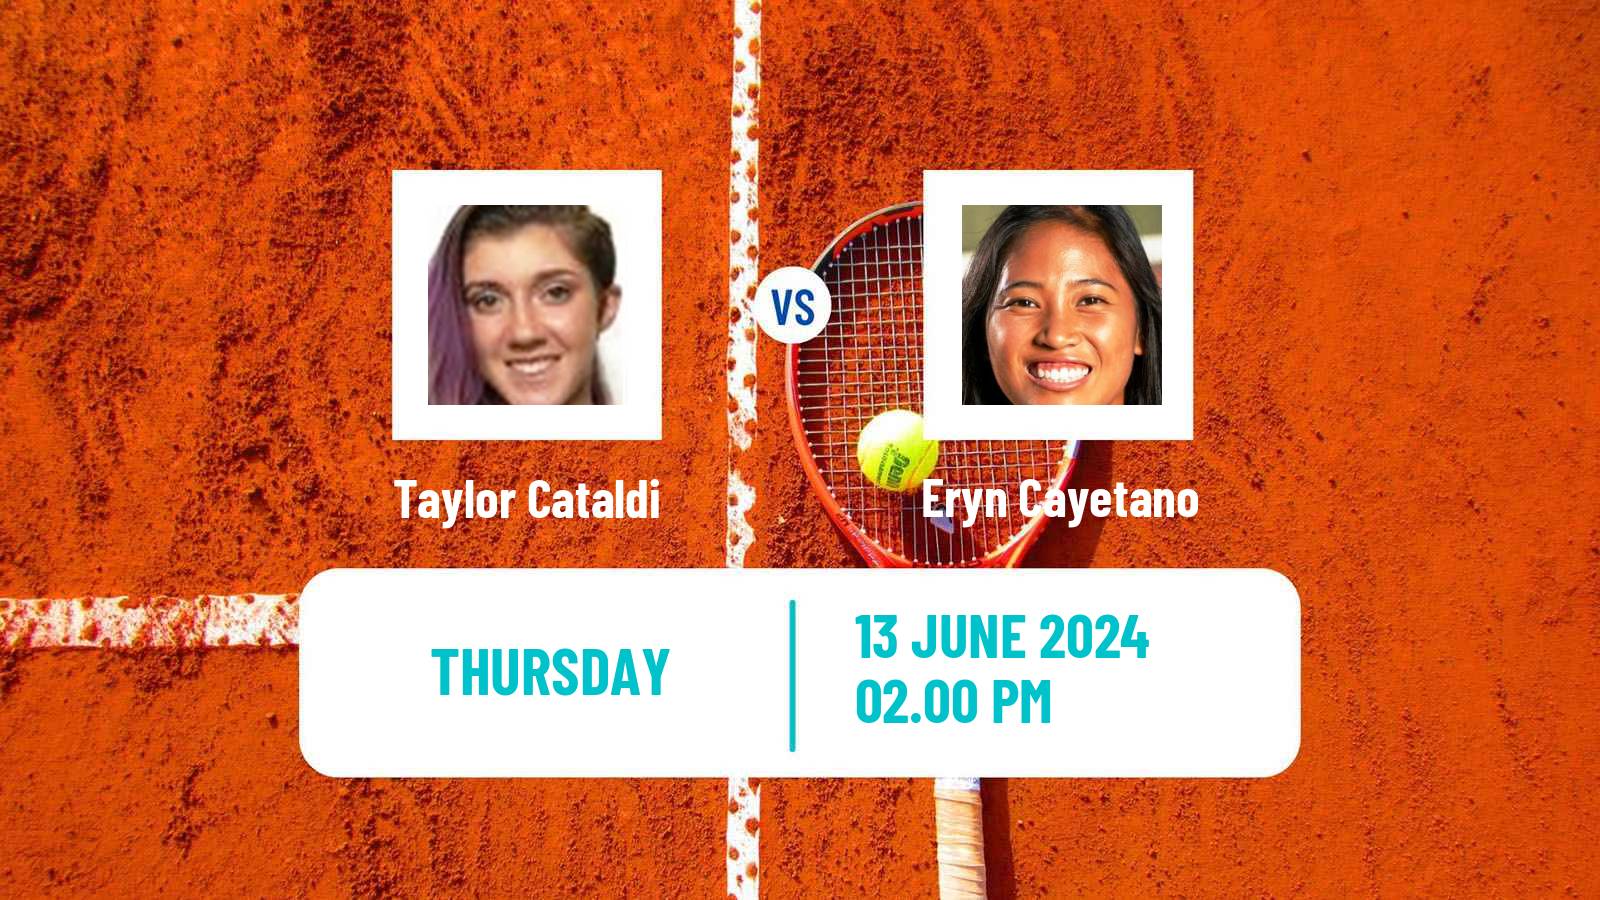 Tennis ITF W15 San Diego Ca 3 Women Taylor Cataldi - Eryn Cayetano